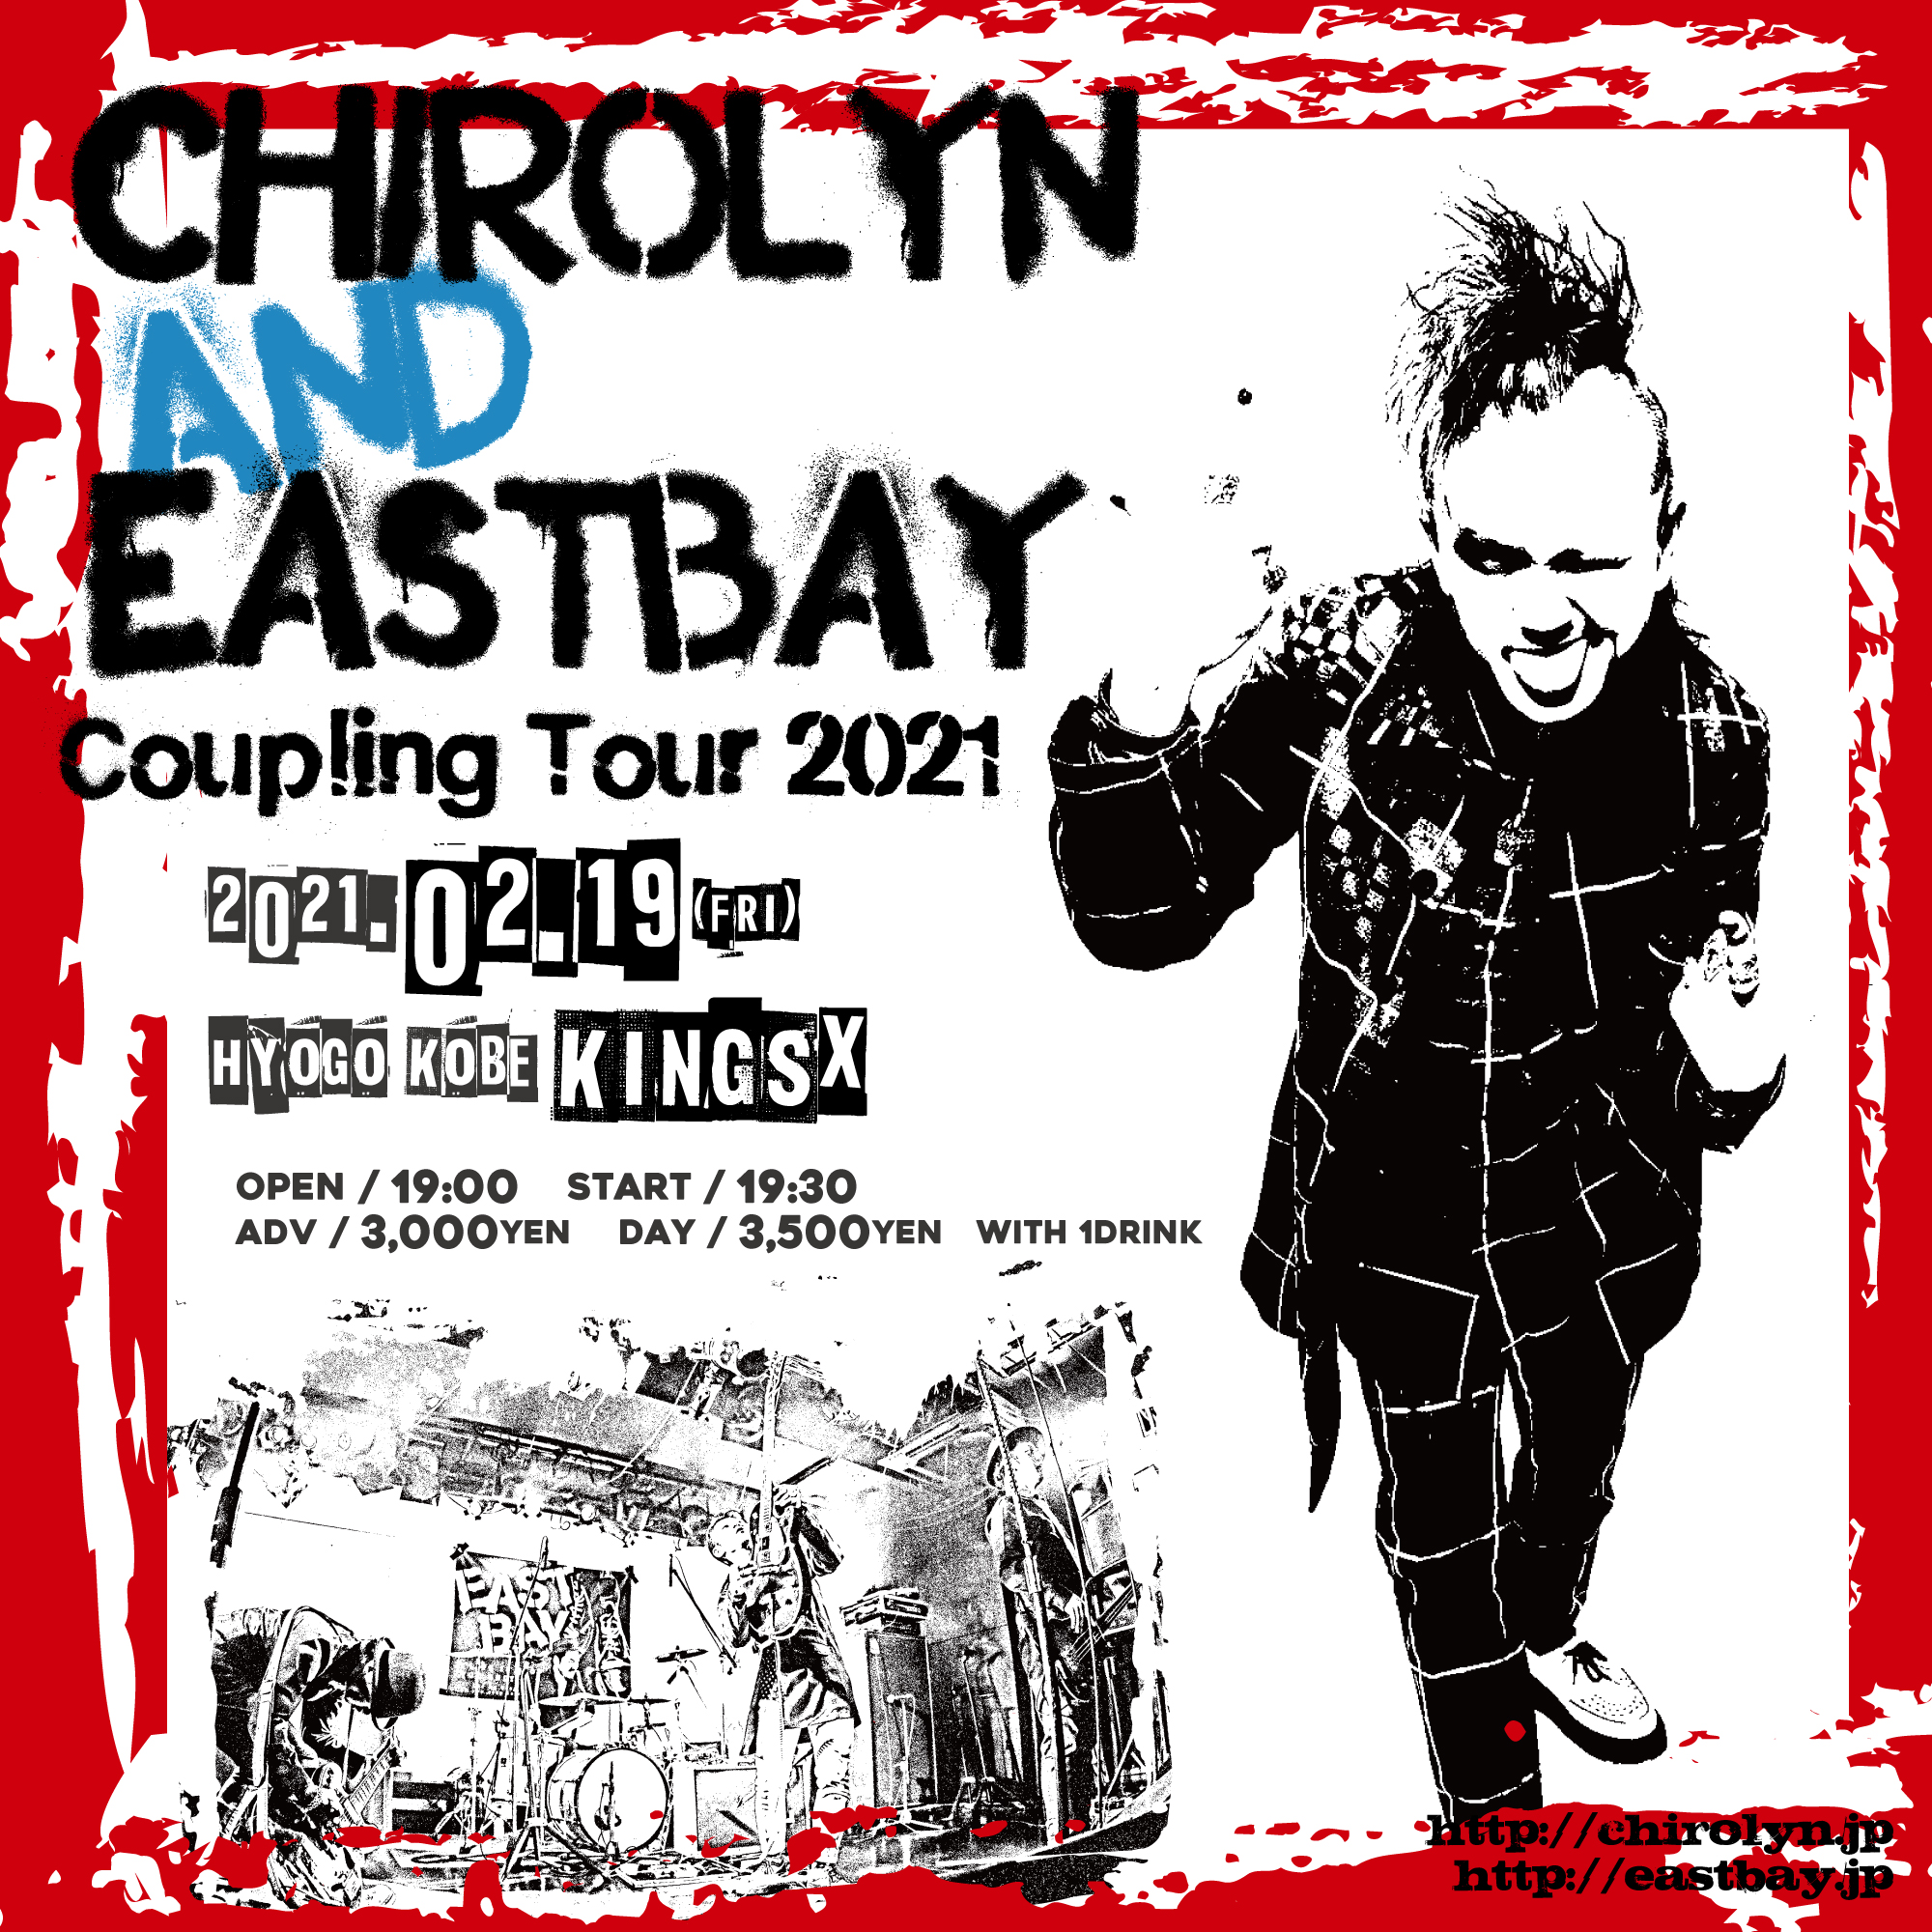 【中止】Chirolyn & EASTBAY Coupling Tour 2021 in 神戸の写真